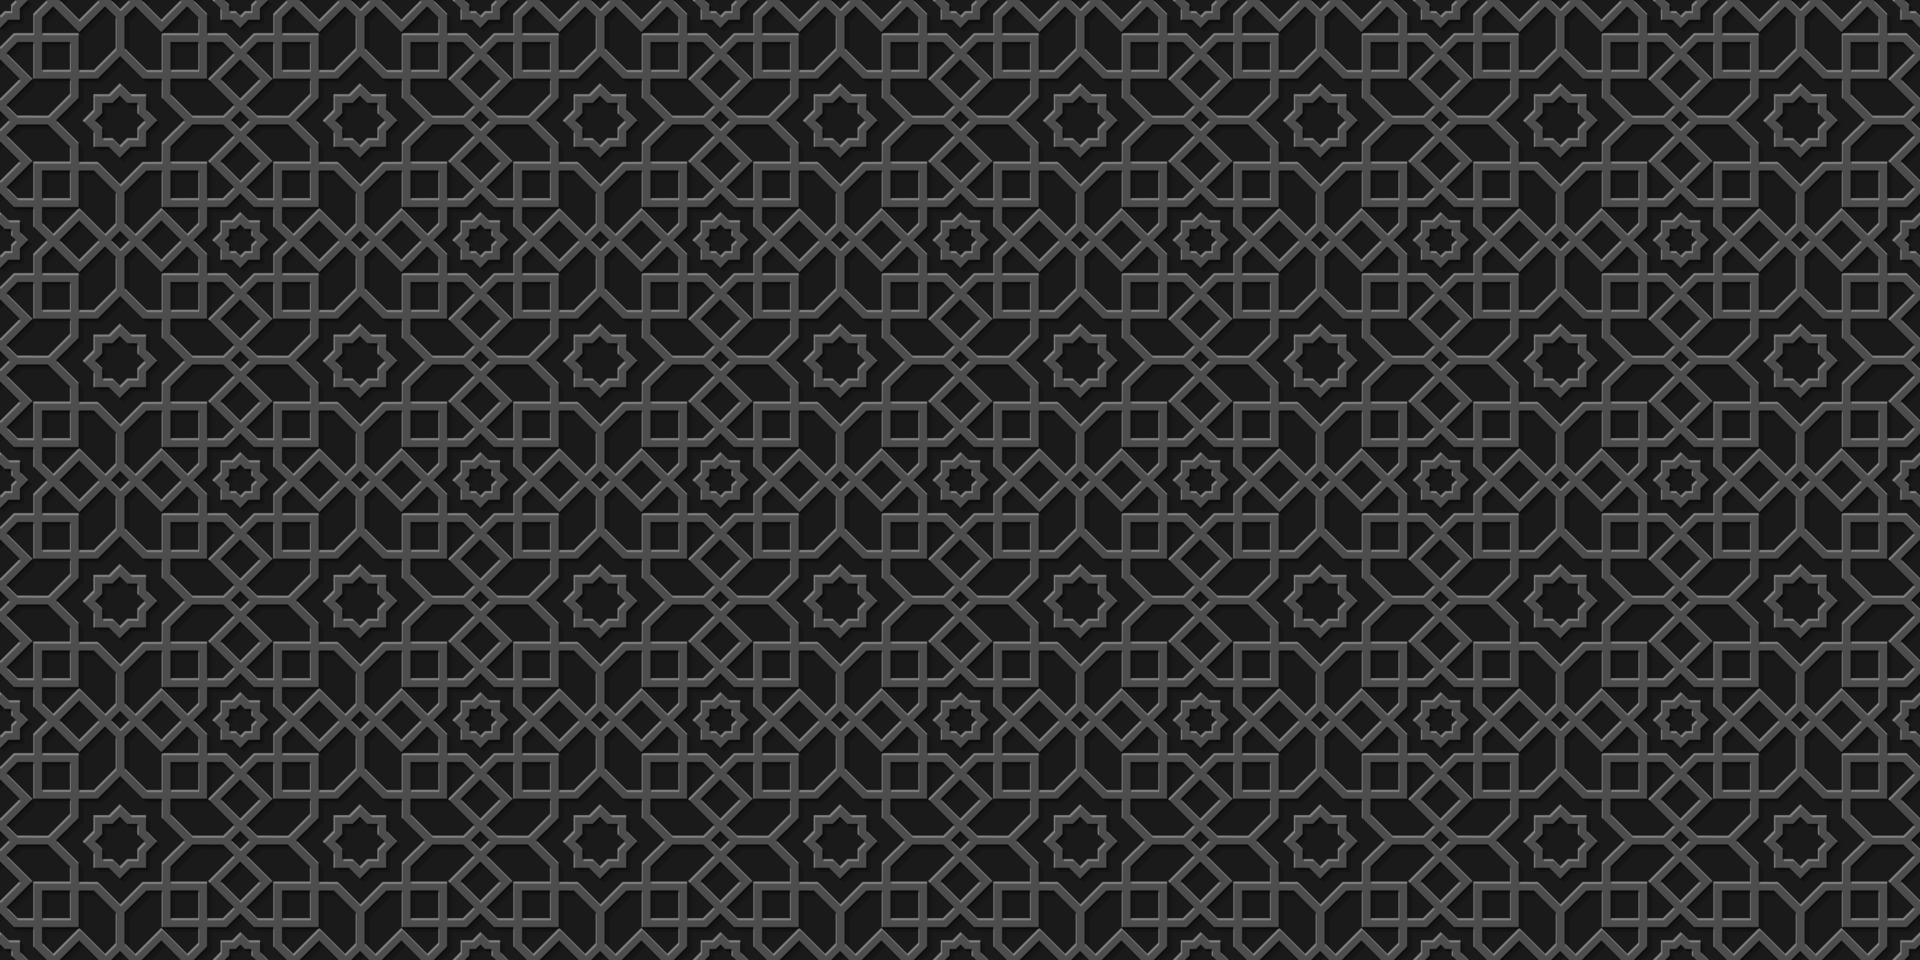 sfondo islamico nero, motivo arabo, stile intagliato vettore